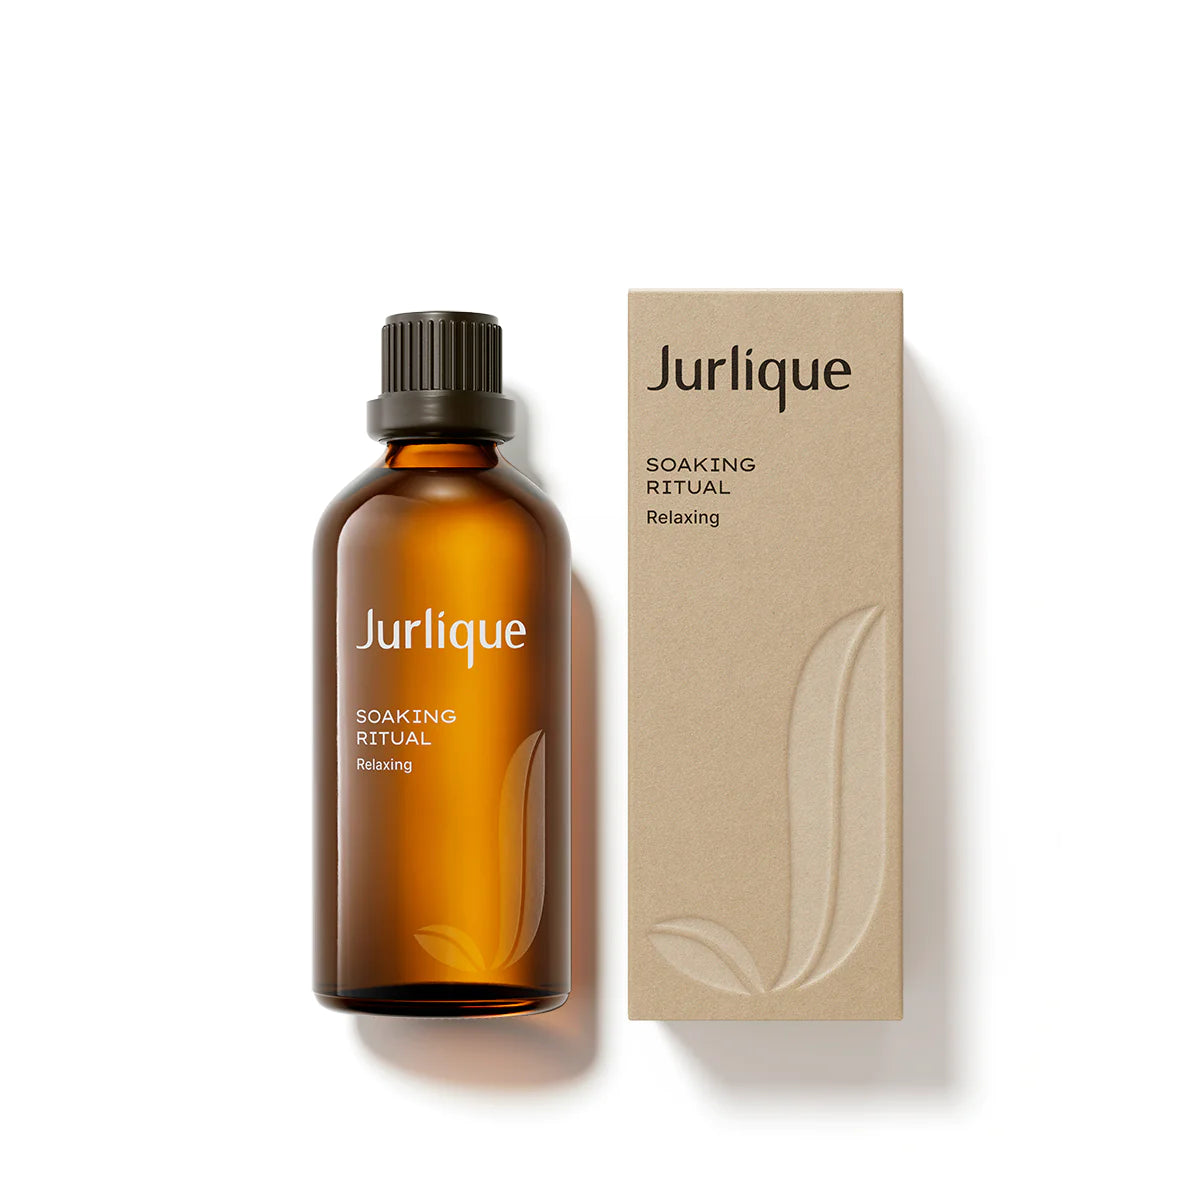 Jurlique Soaking Ritual Relaxing Bath Oil